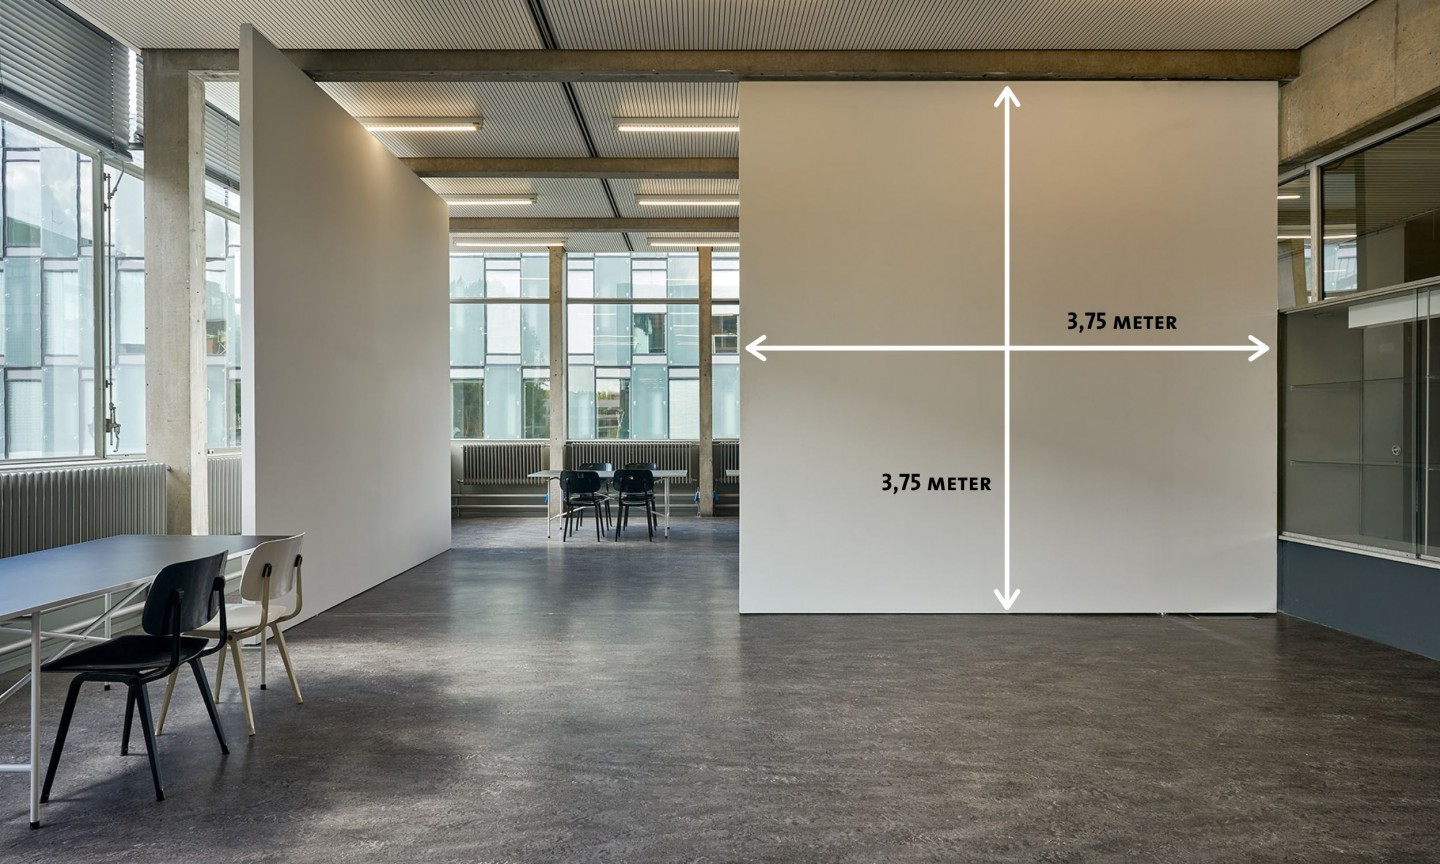 taatsdeuren Gerrit Rietveld Academie ©Hans Morren